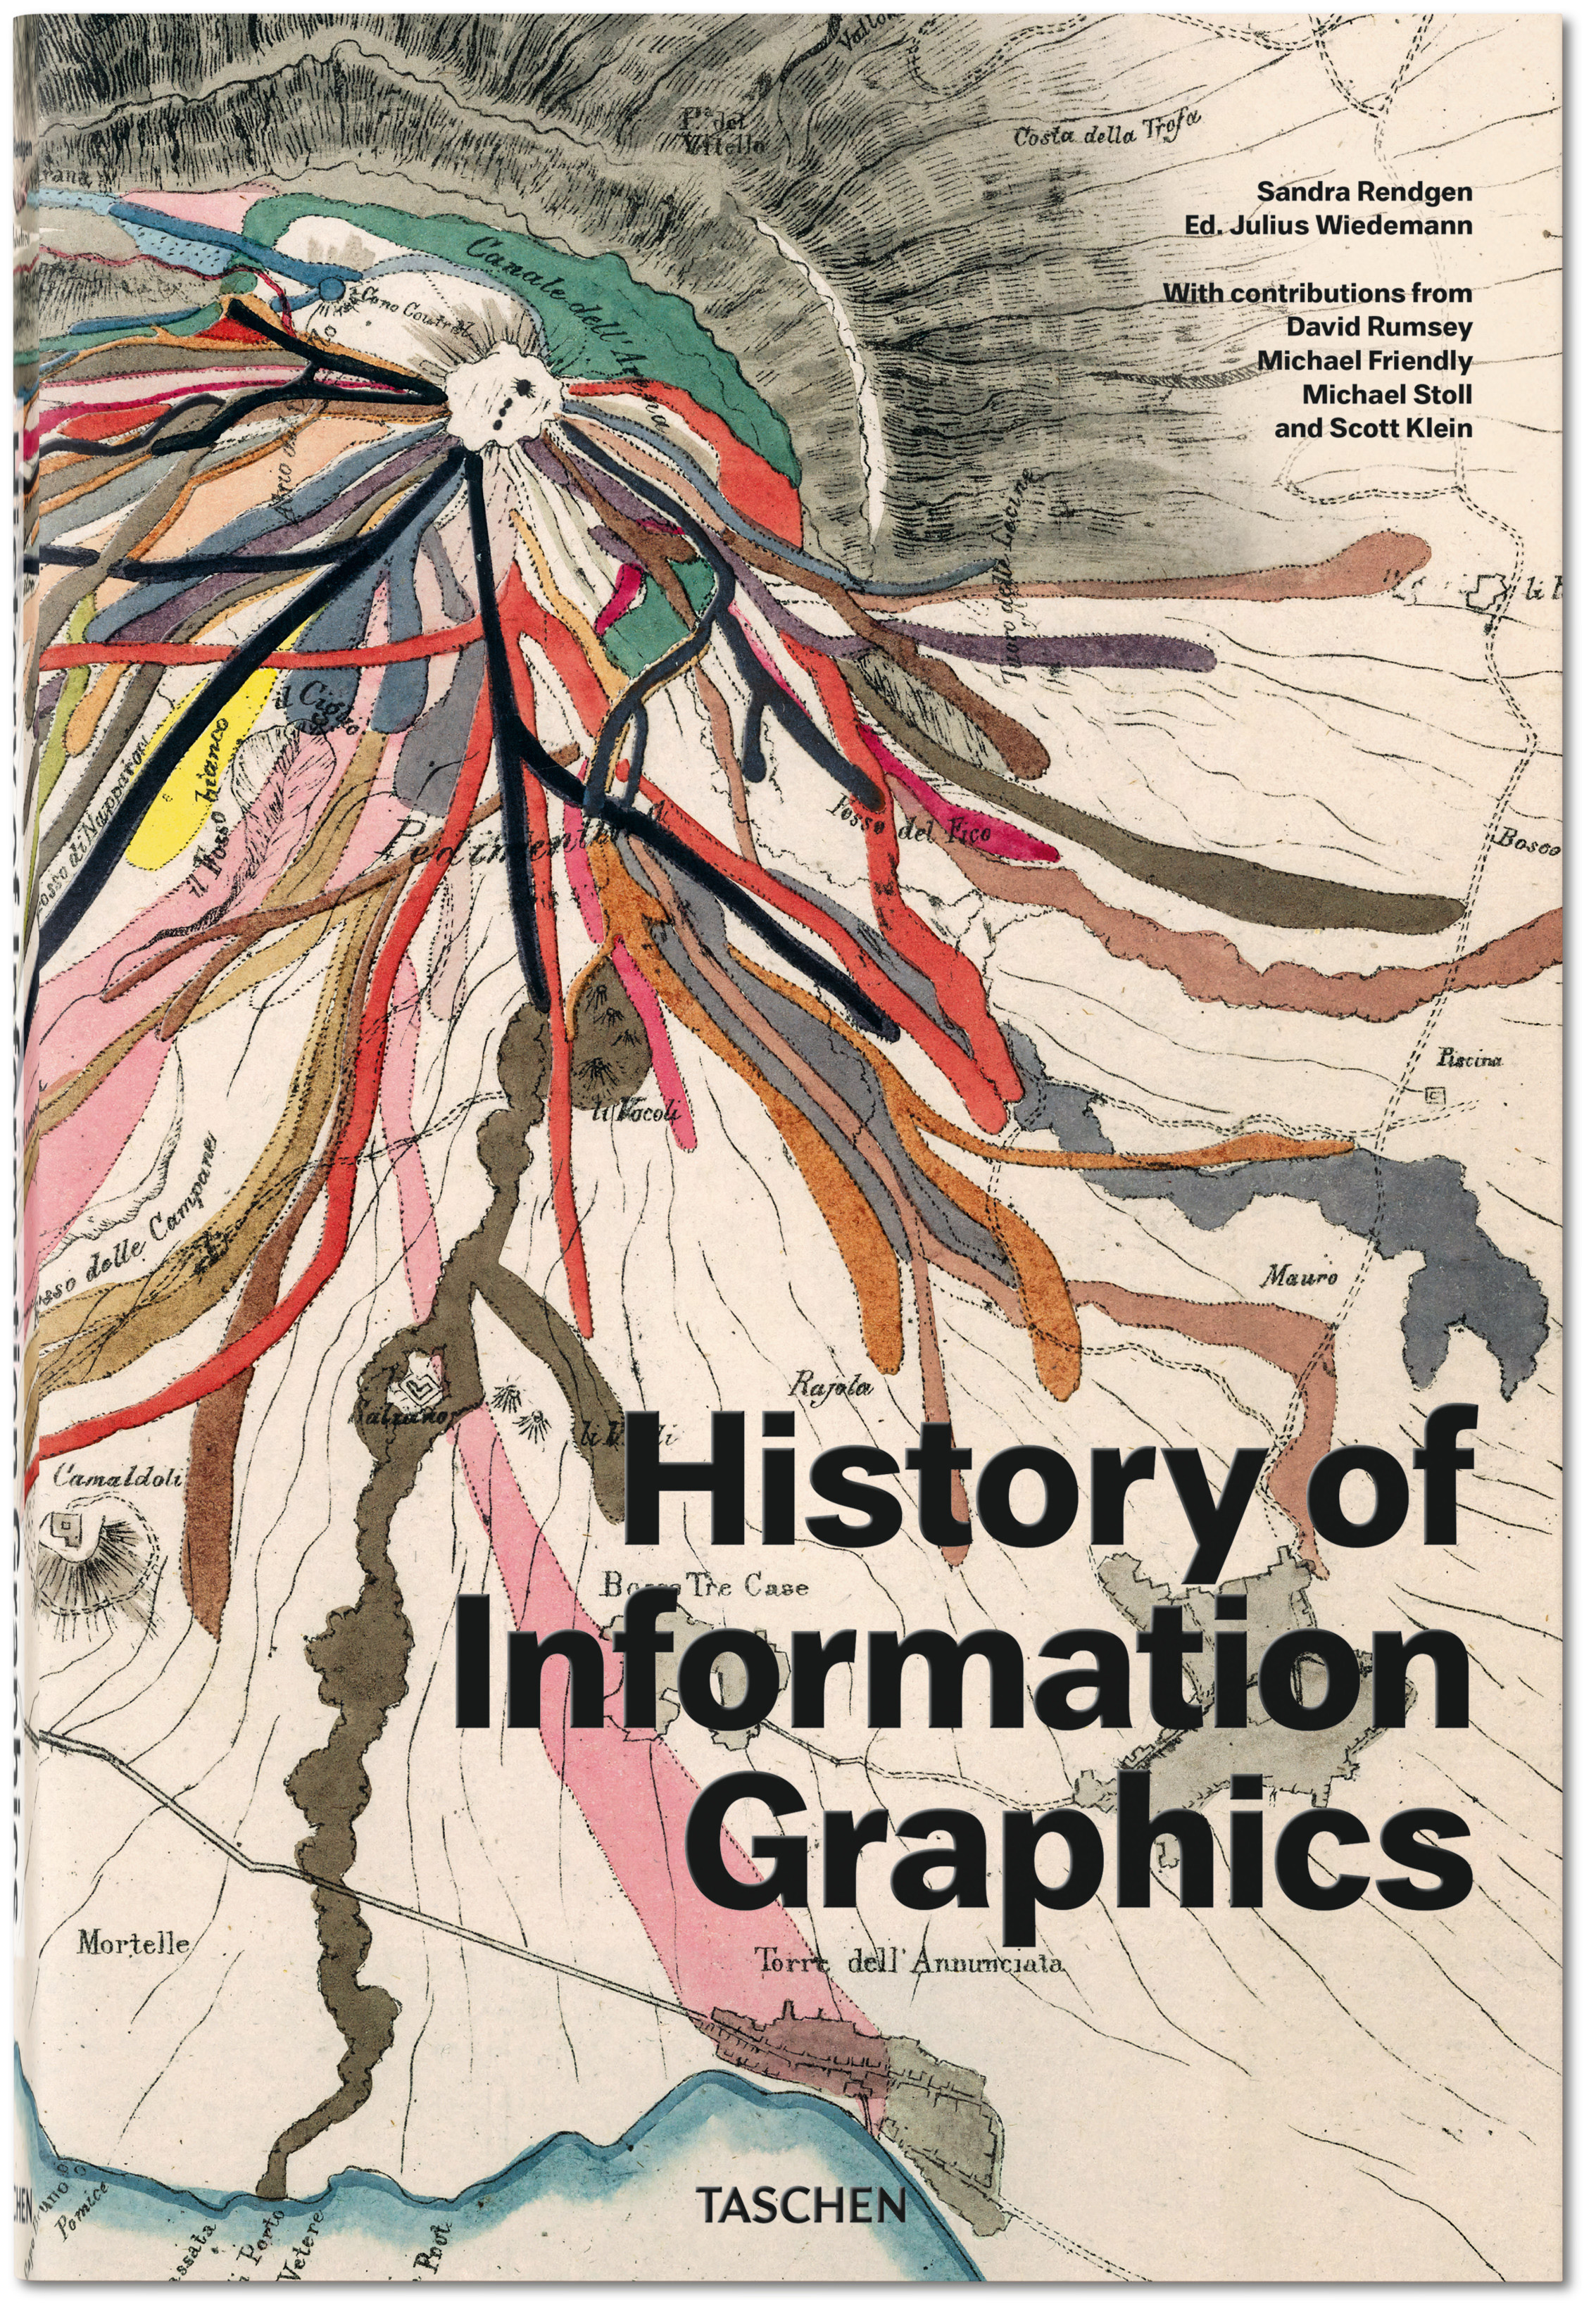 History Of Information Graphics von S. Rendgen u. Julius Wiedemann, ersch. 2019.